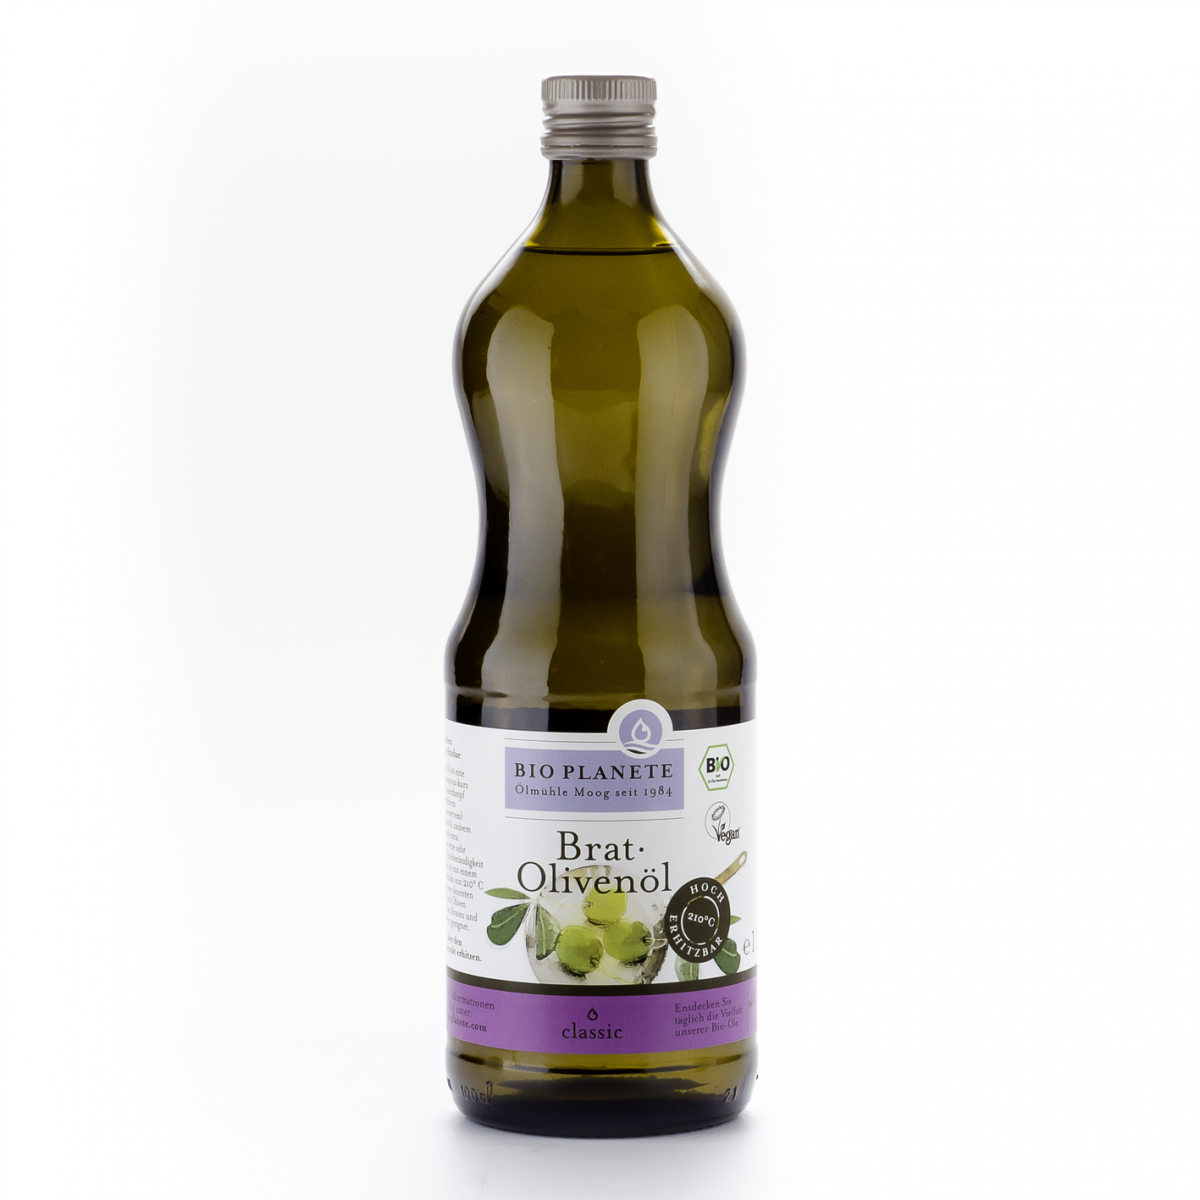 Brat-Olivenöl Flasche 1 l/Glas Einweg - Bio Planète